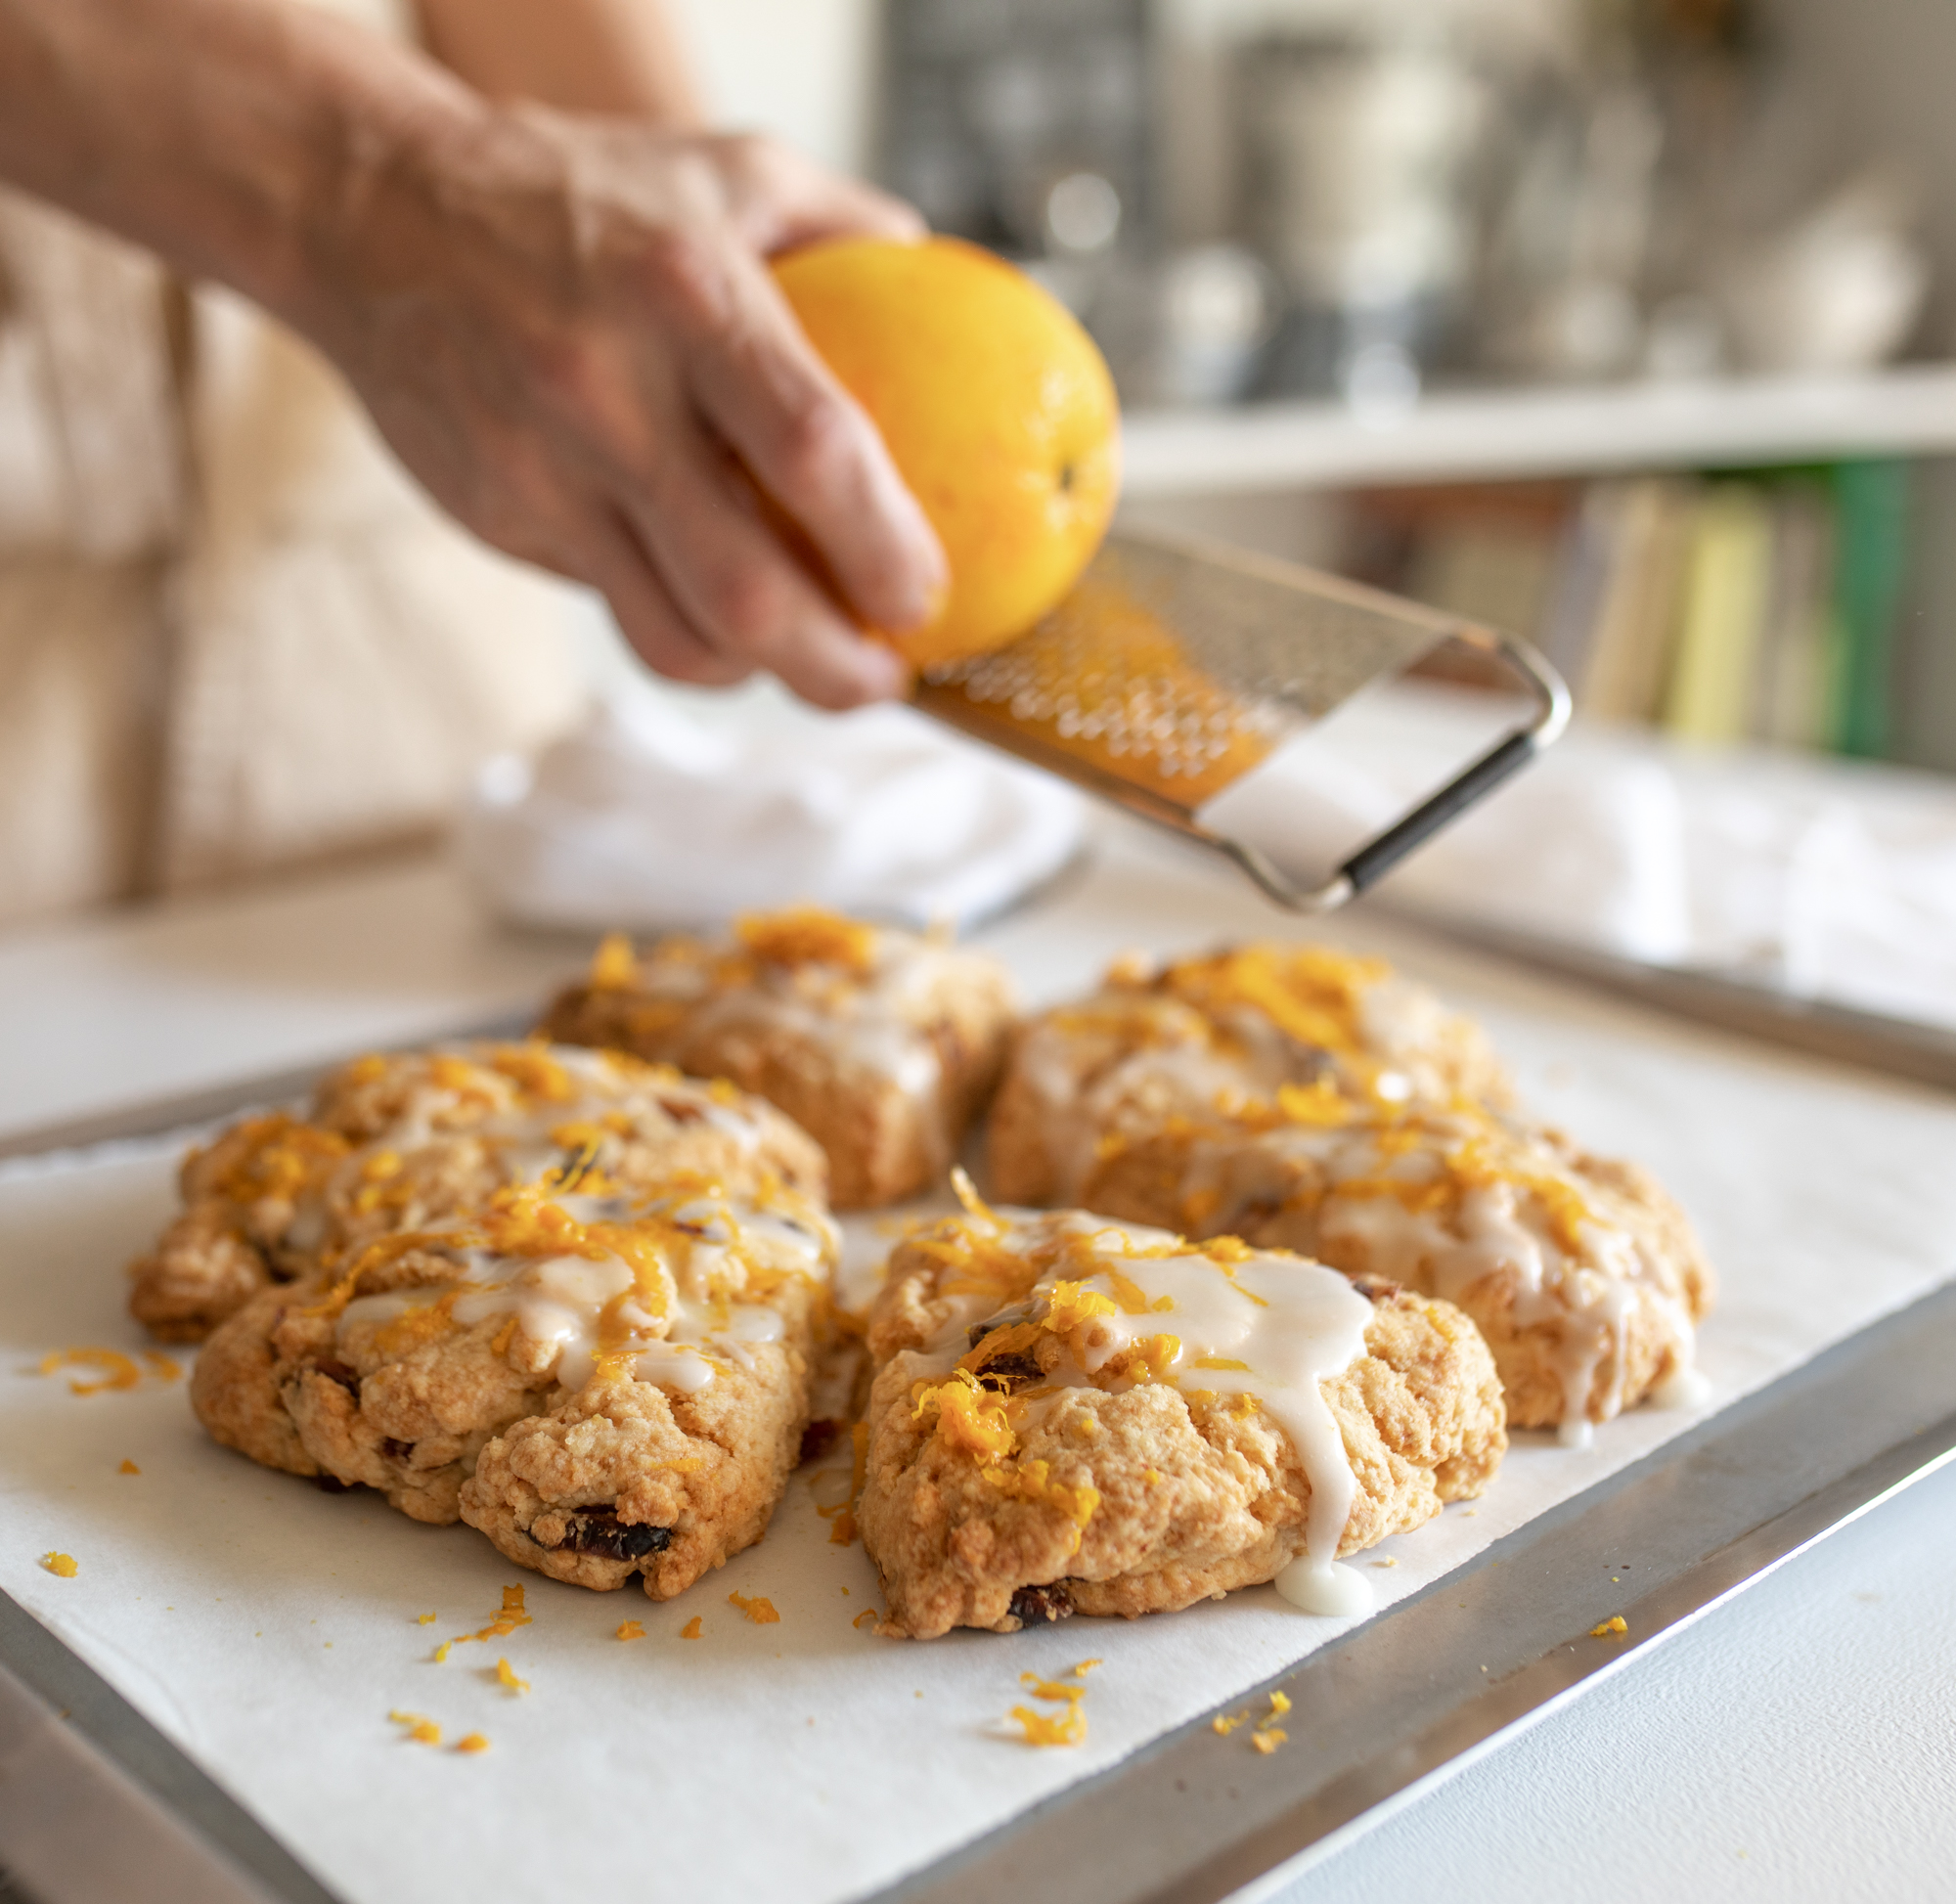 Grating orange peel over glazed scones on white table